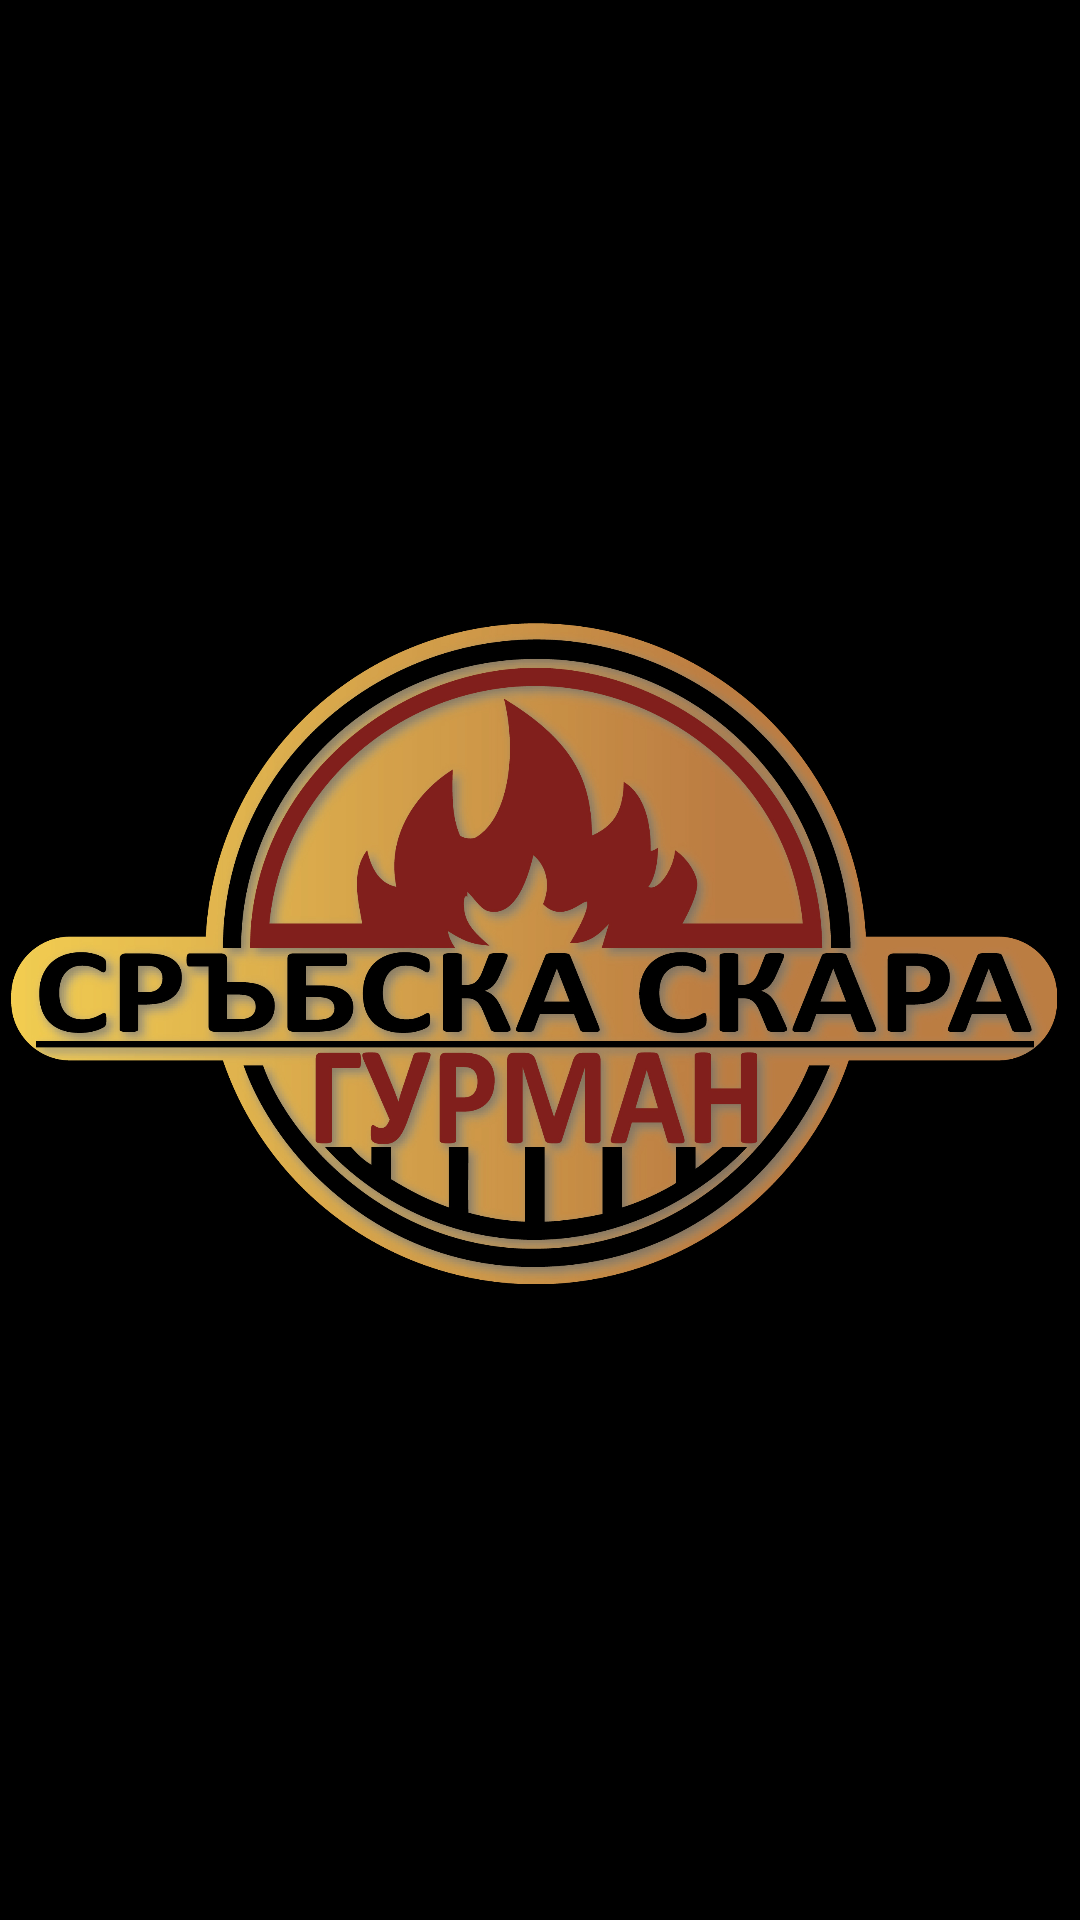 Лого на КАМРАН 2015 ООД